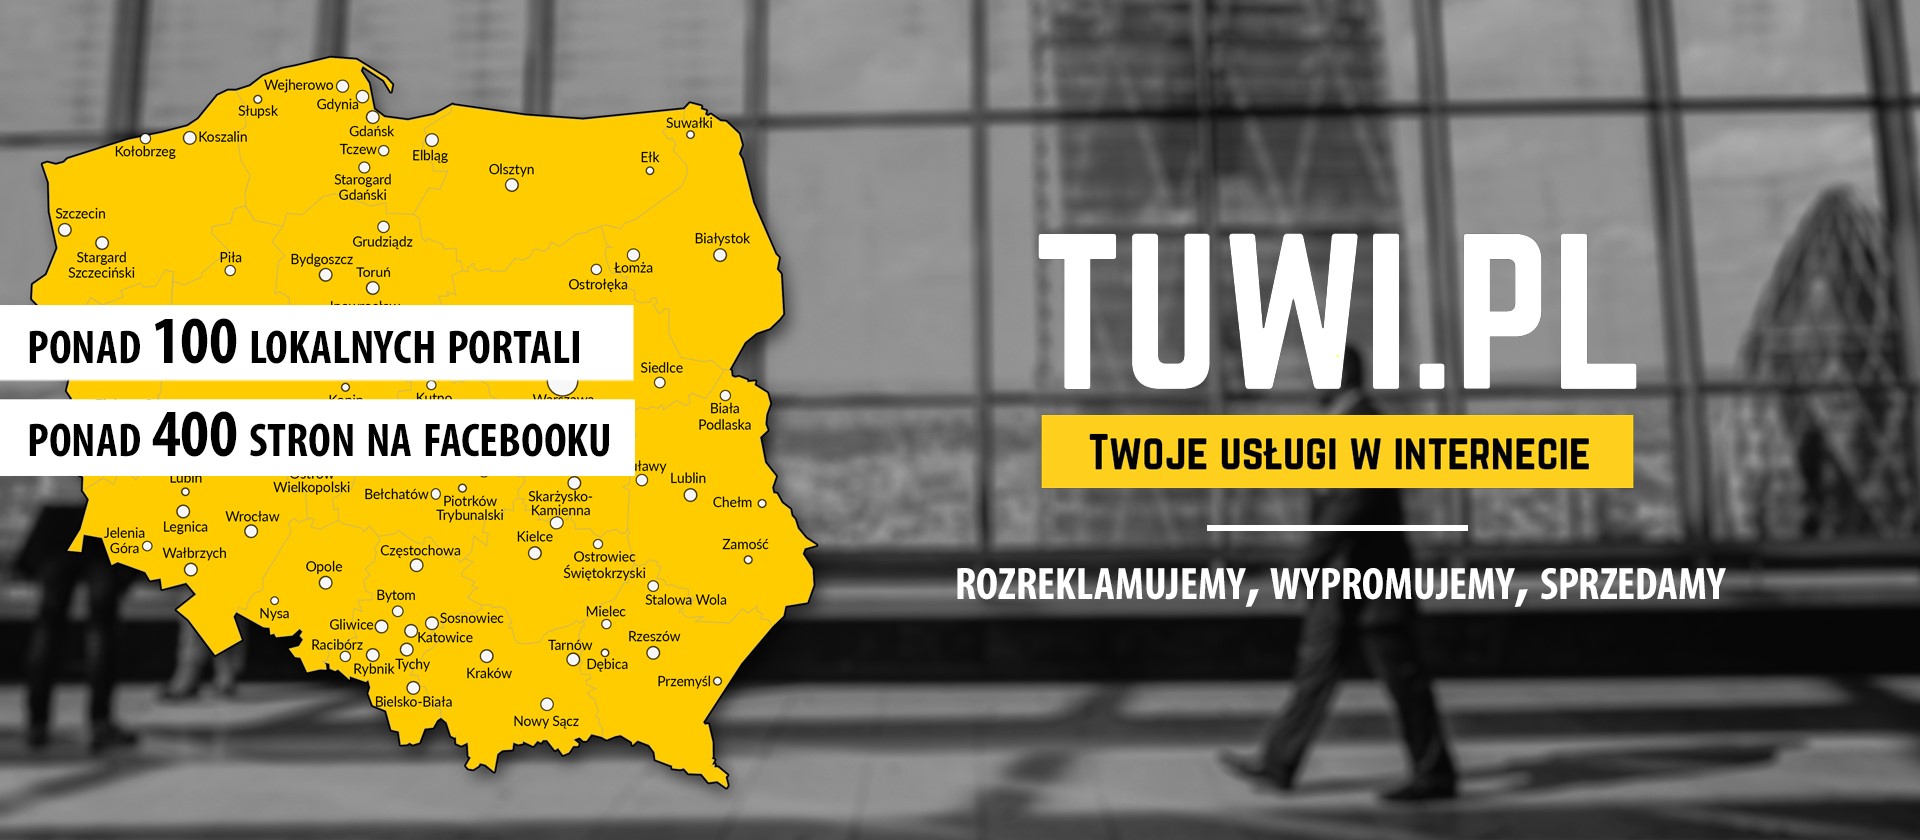 Nowa Strona WWW - tylko TUWI.PL